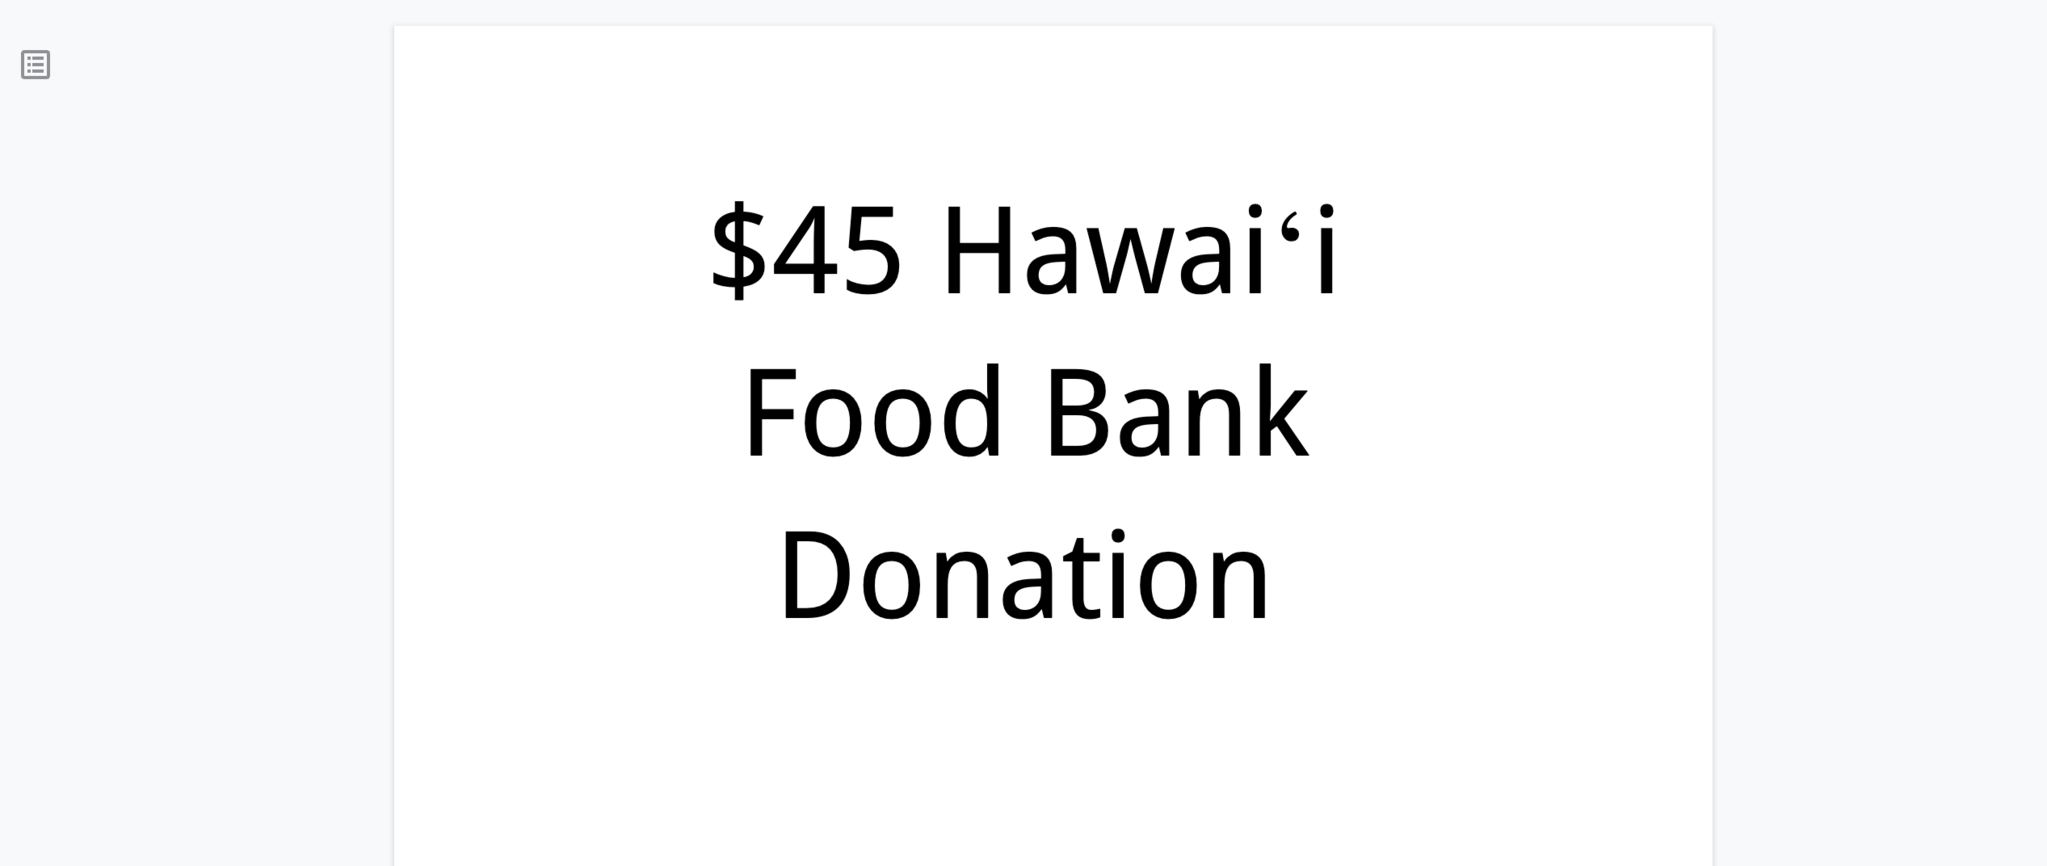 Hawaii Food Bank $45 Donation